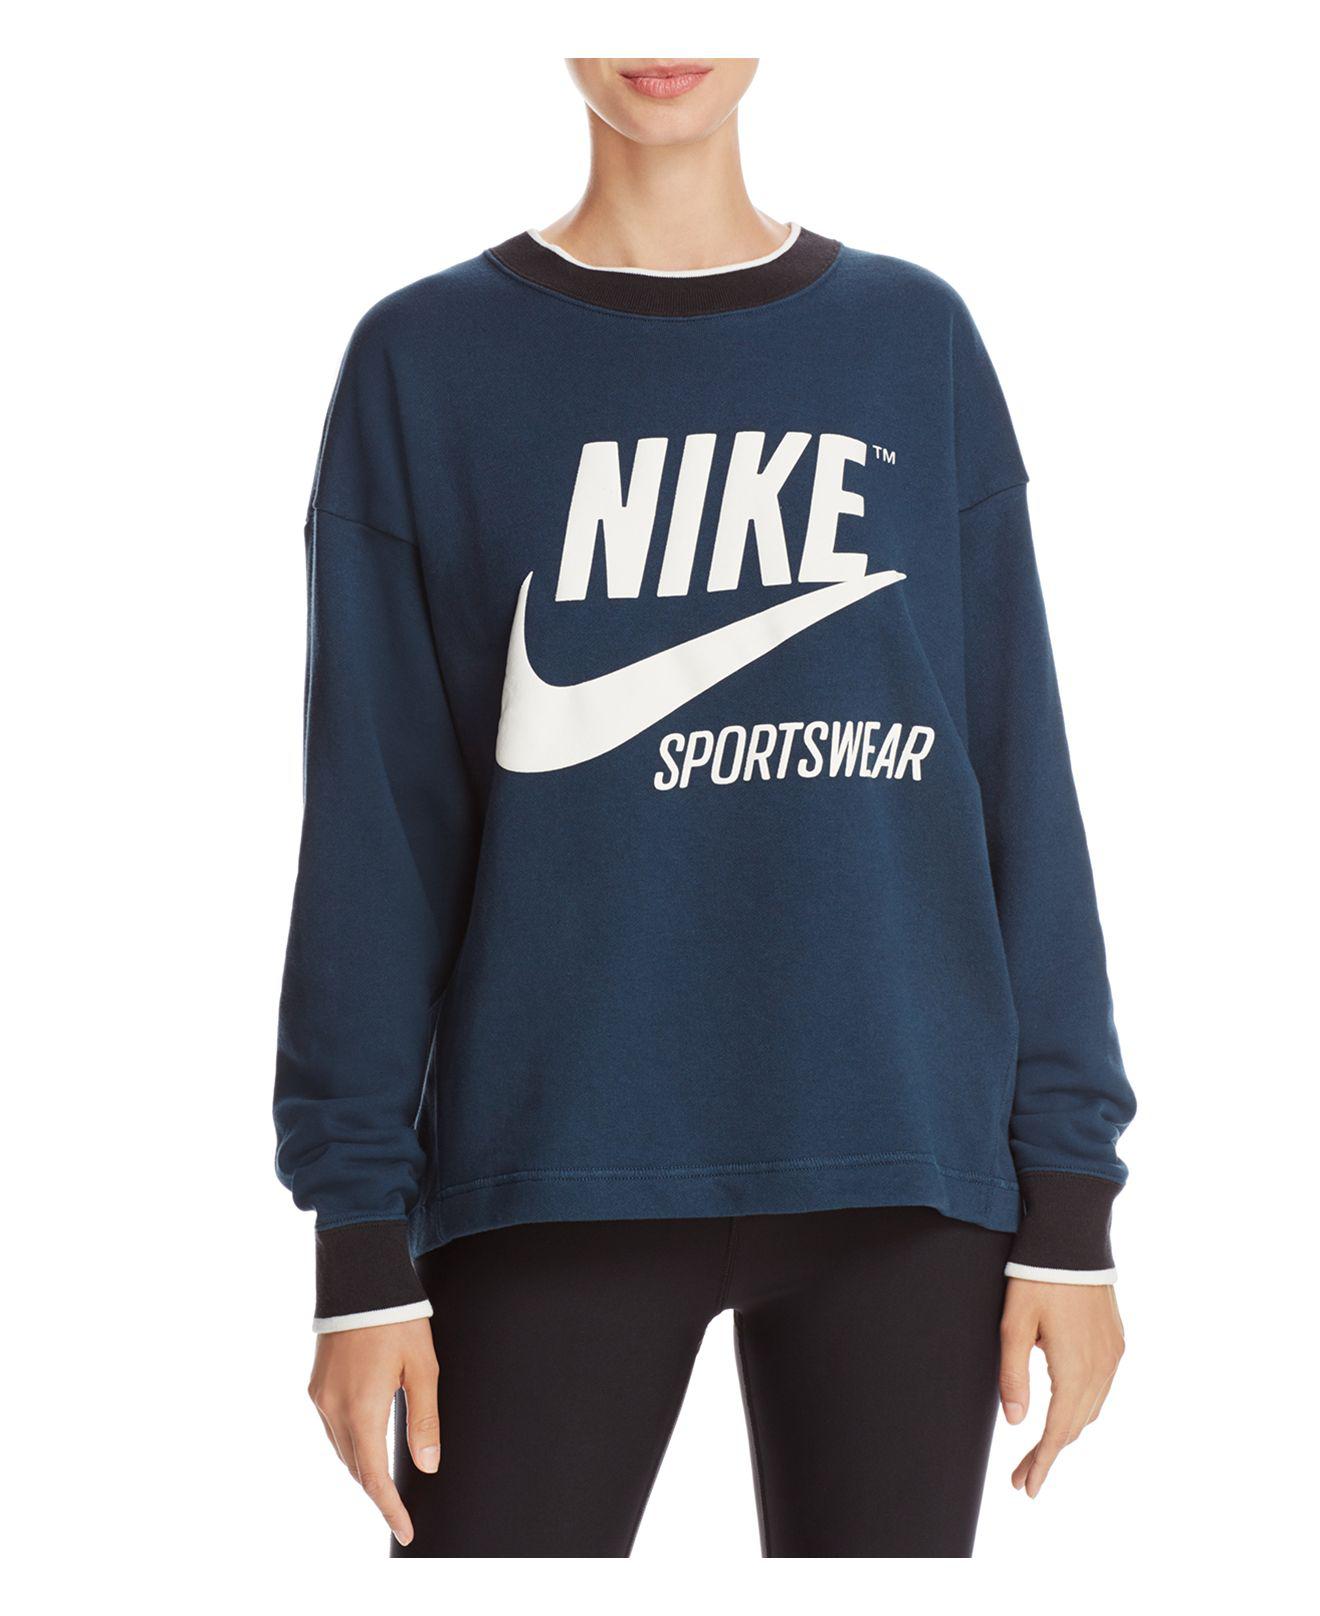 Lyst - Nike Archive Logo Sweatshirt in Blue